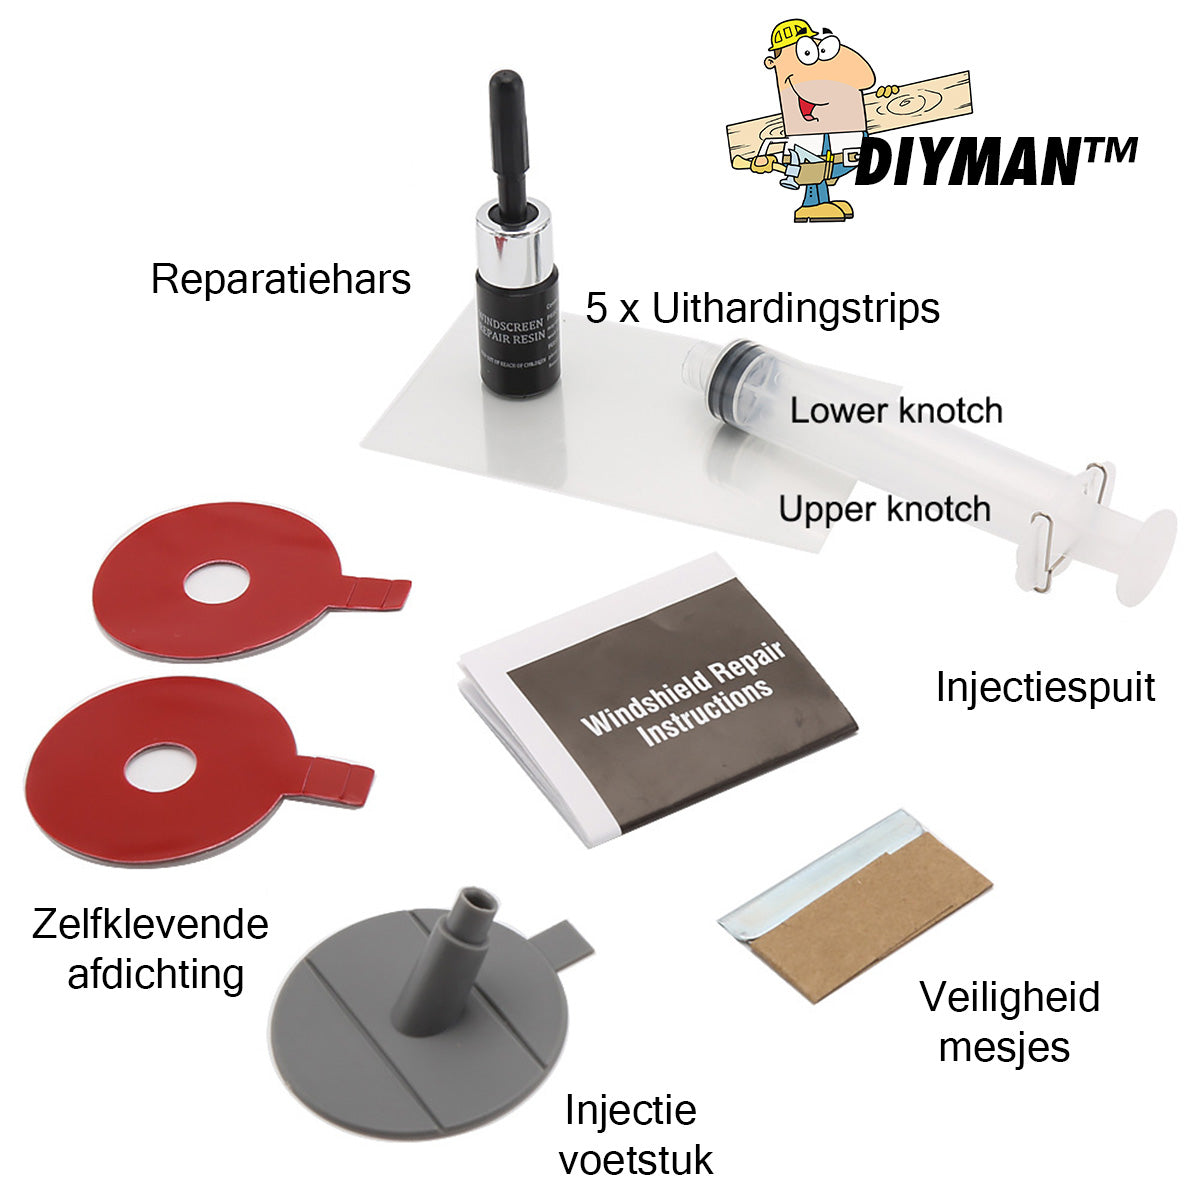 DIYMAN™ Glas Reparatie Kit | Herstel Ieder Soort Glasbreuk En Voorkom Dure Reparaties!